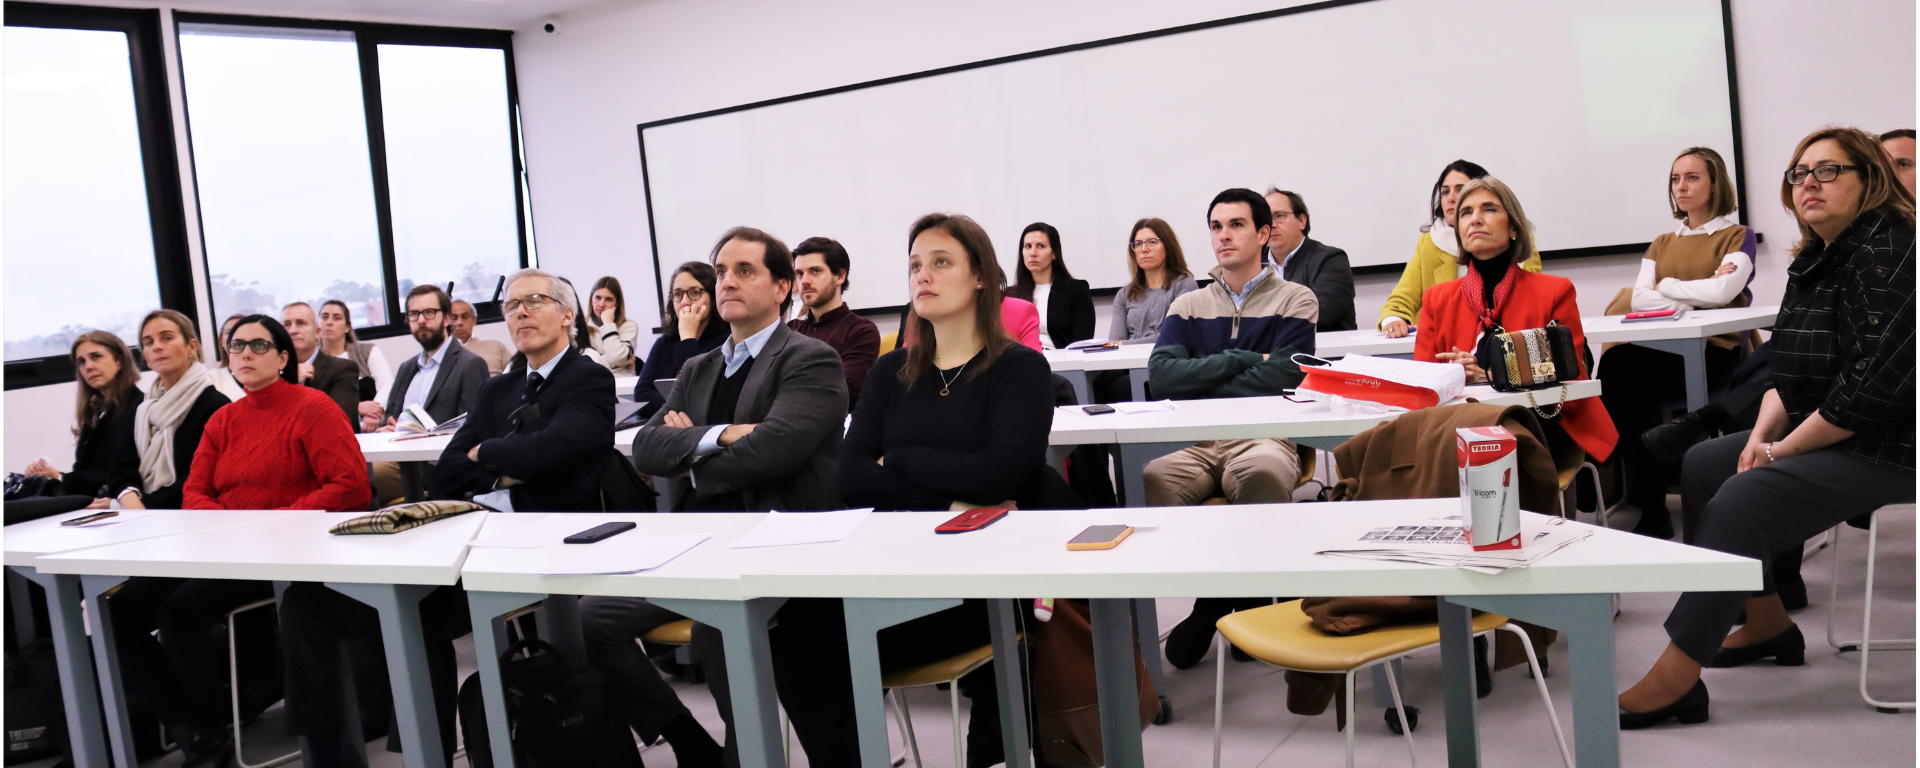 Se realizó un nuevo taller sobre Sostenibilidad y el ámbito universitario